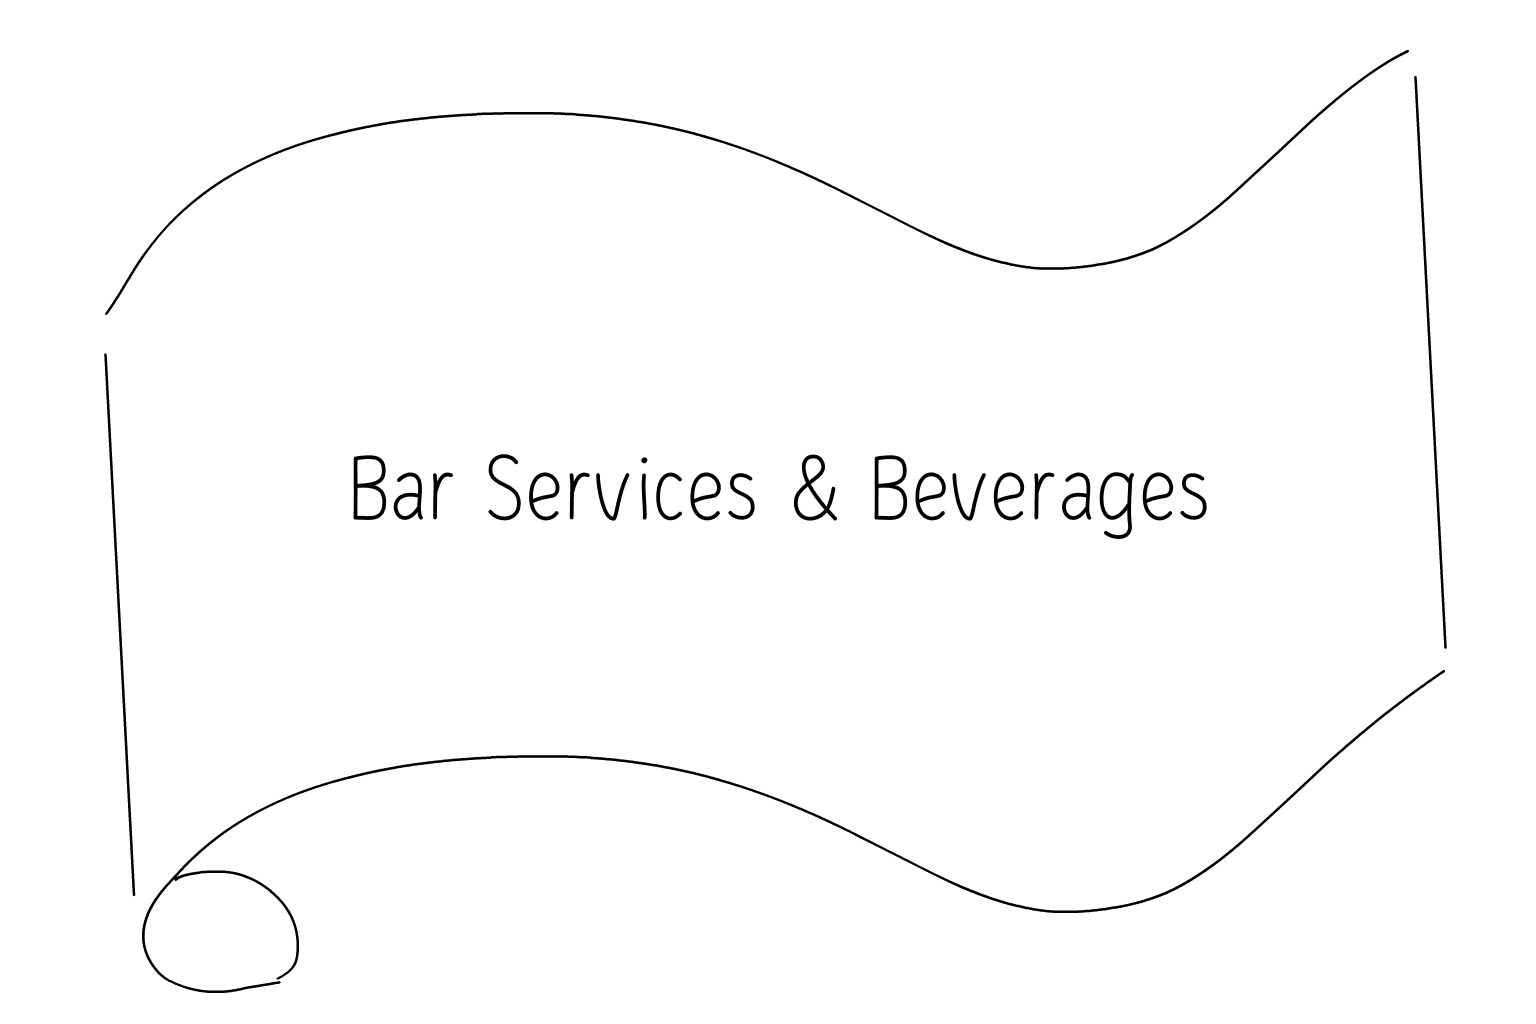 Иллюстрация Барные услуги и напитки